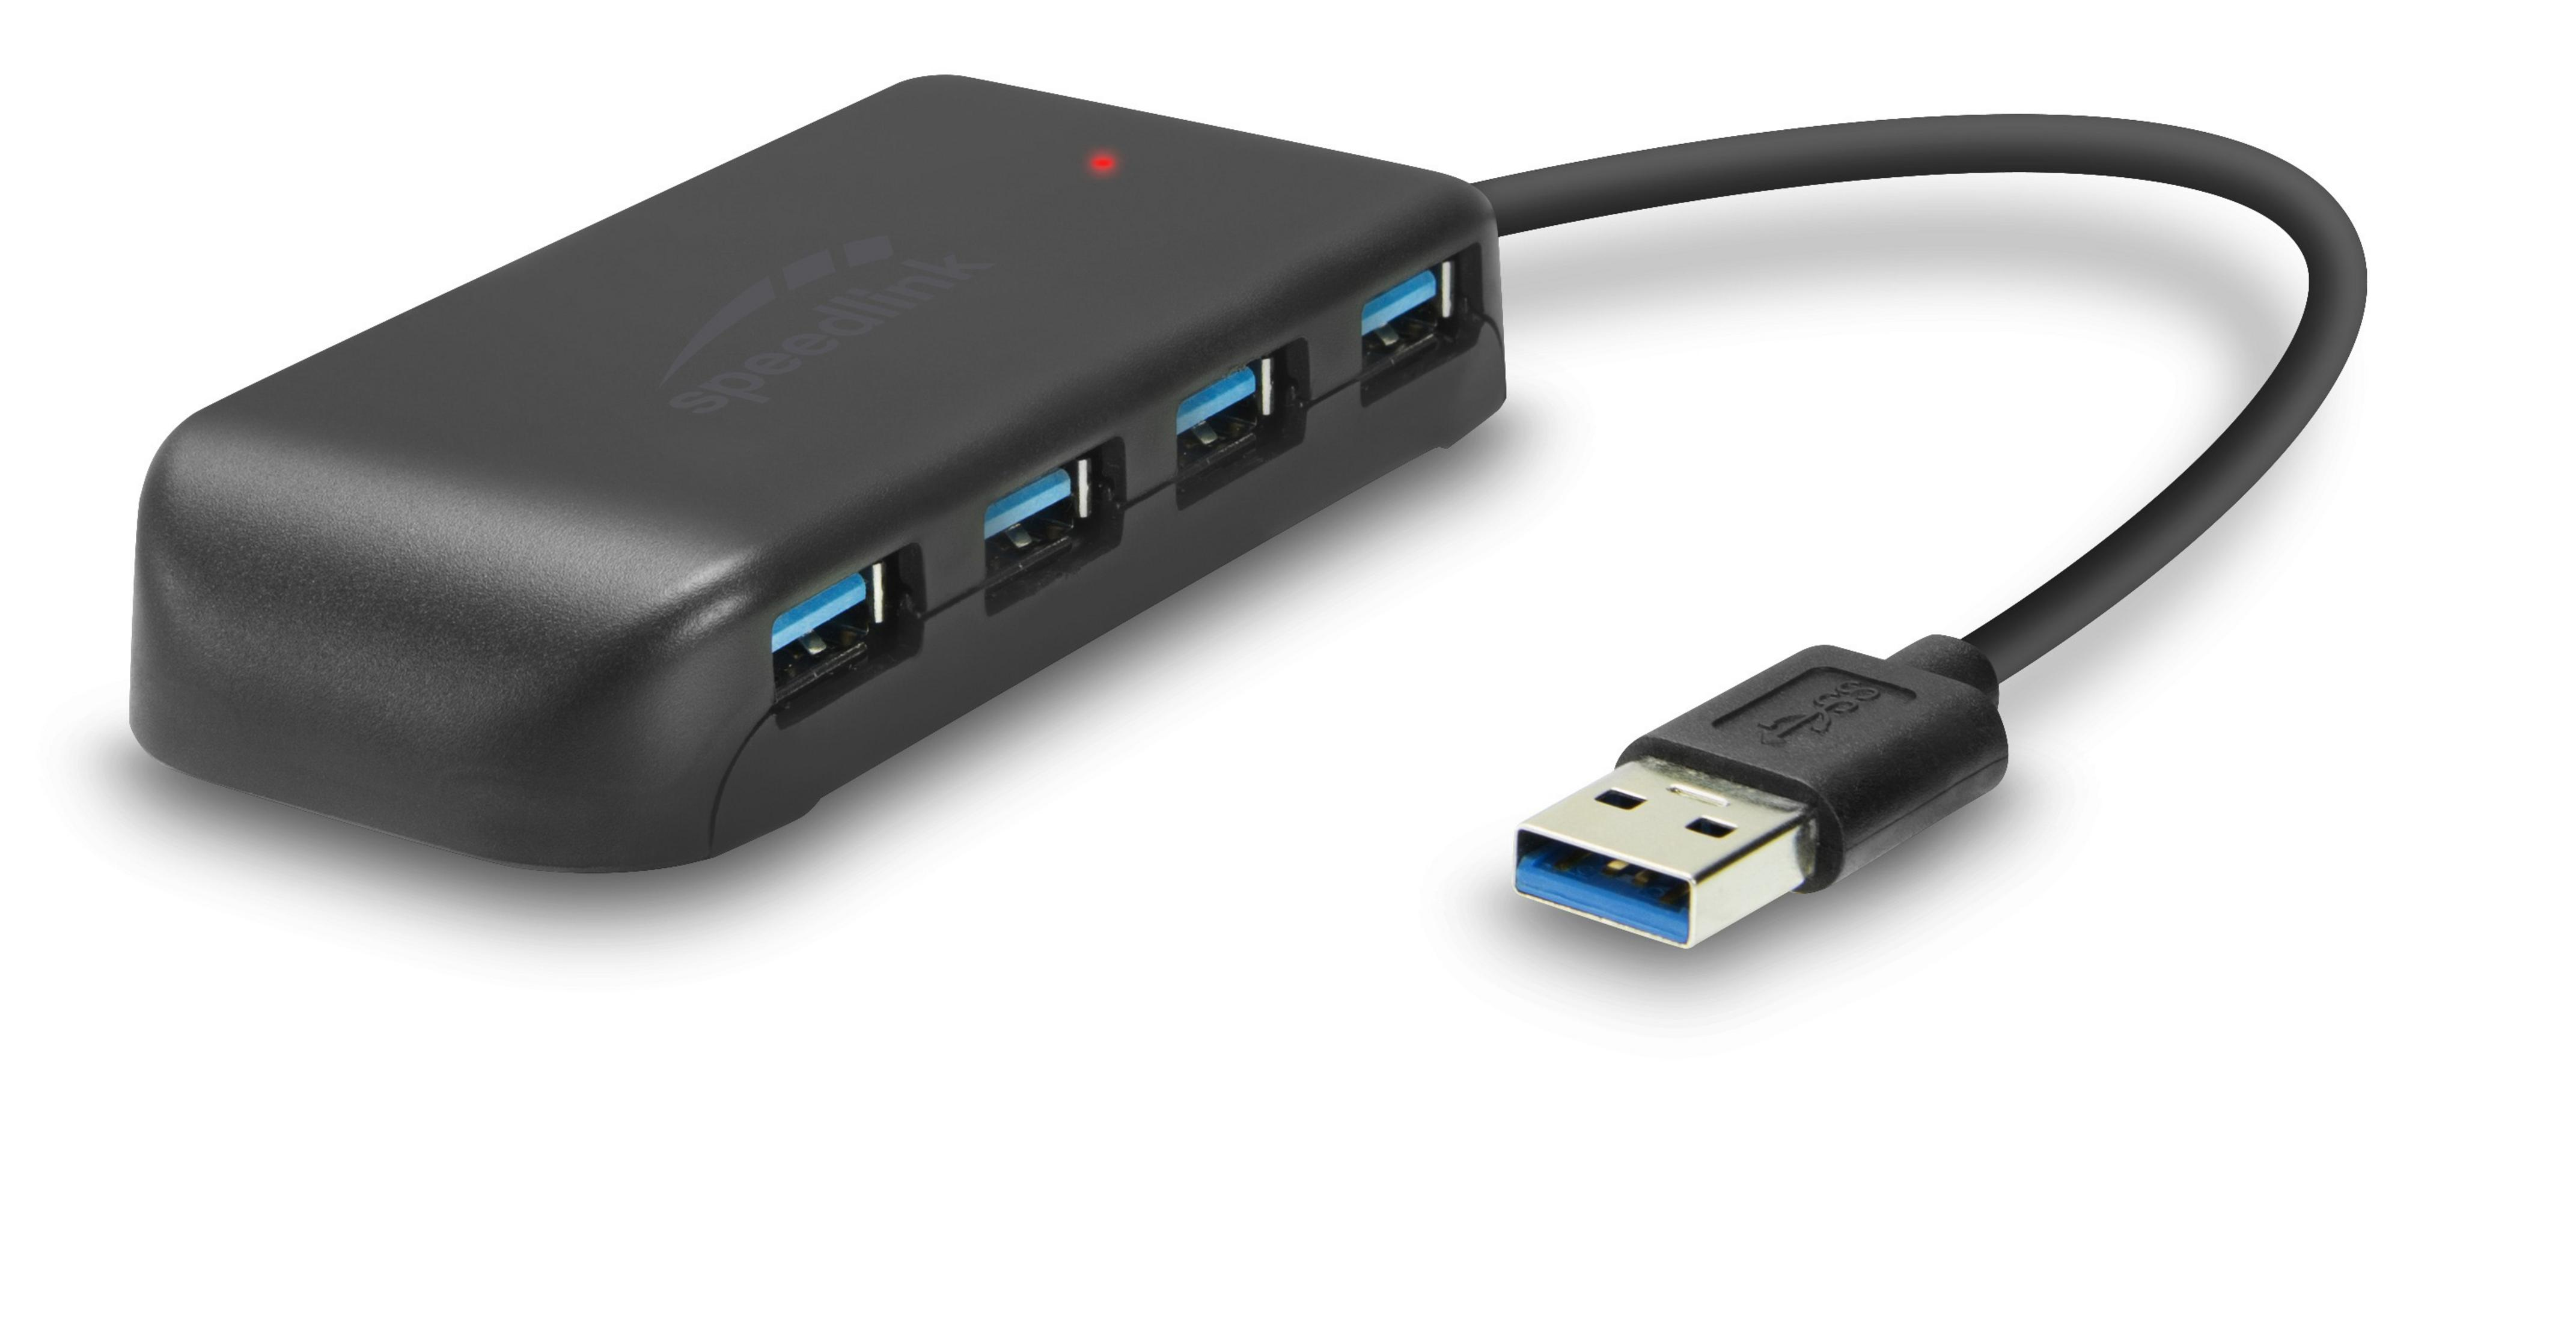 SPEEDLINK SL-140108-BK SNAPPY EVO USB Hub, HUB USB USB 7-PORT 3.0, Schwarz